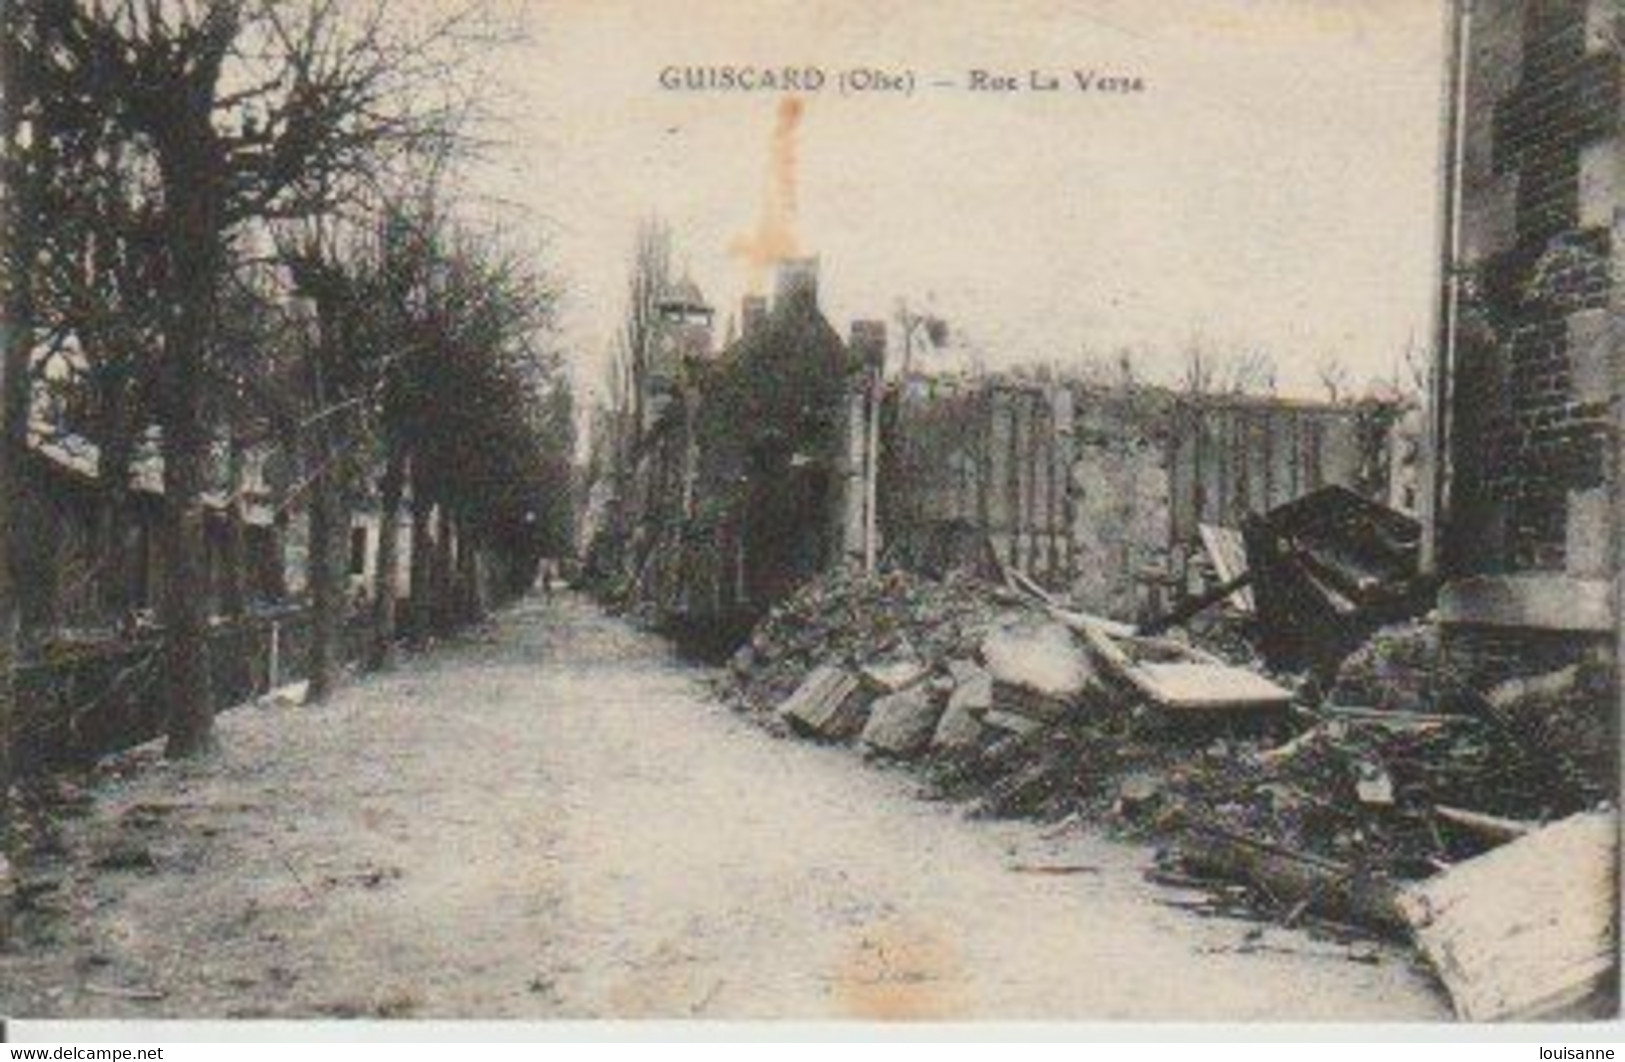 GUISCARD  ( 60 )   RUE  LA  VERSE  - RUINES  DE  GUERRE  1914 - 15  - C P A  ( 22 / 11 / 61  ) - Guiscard